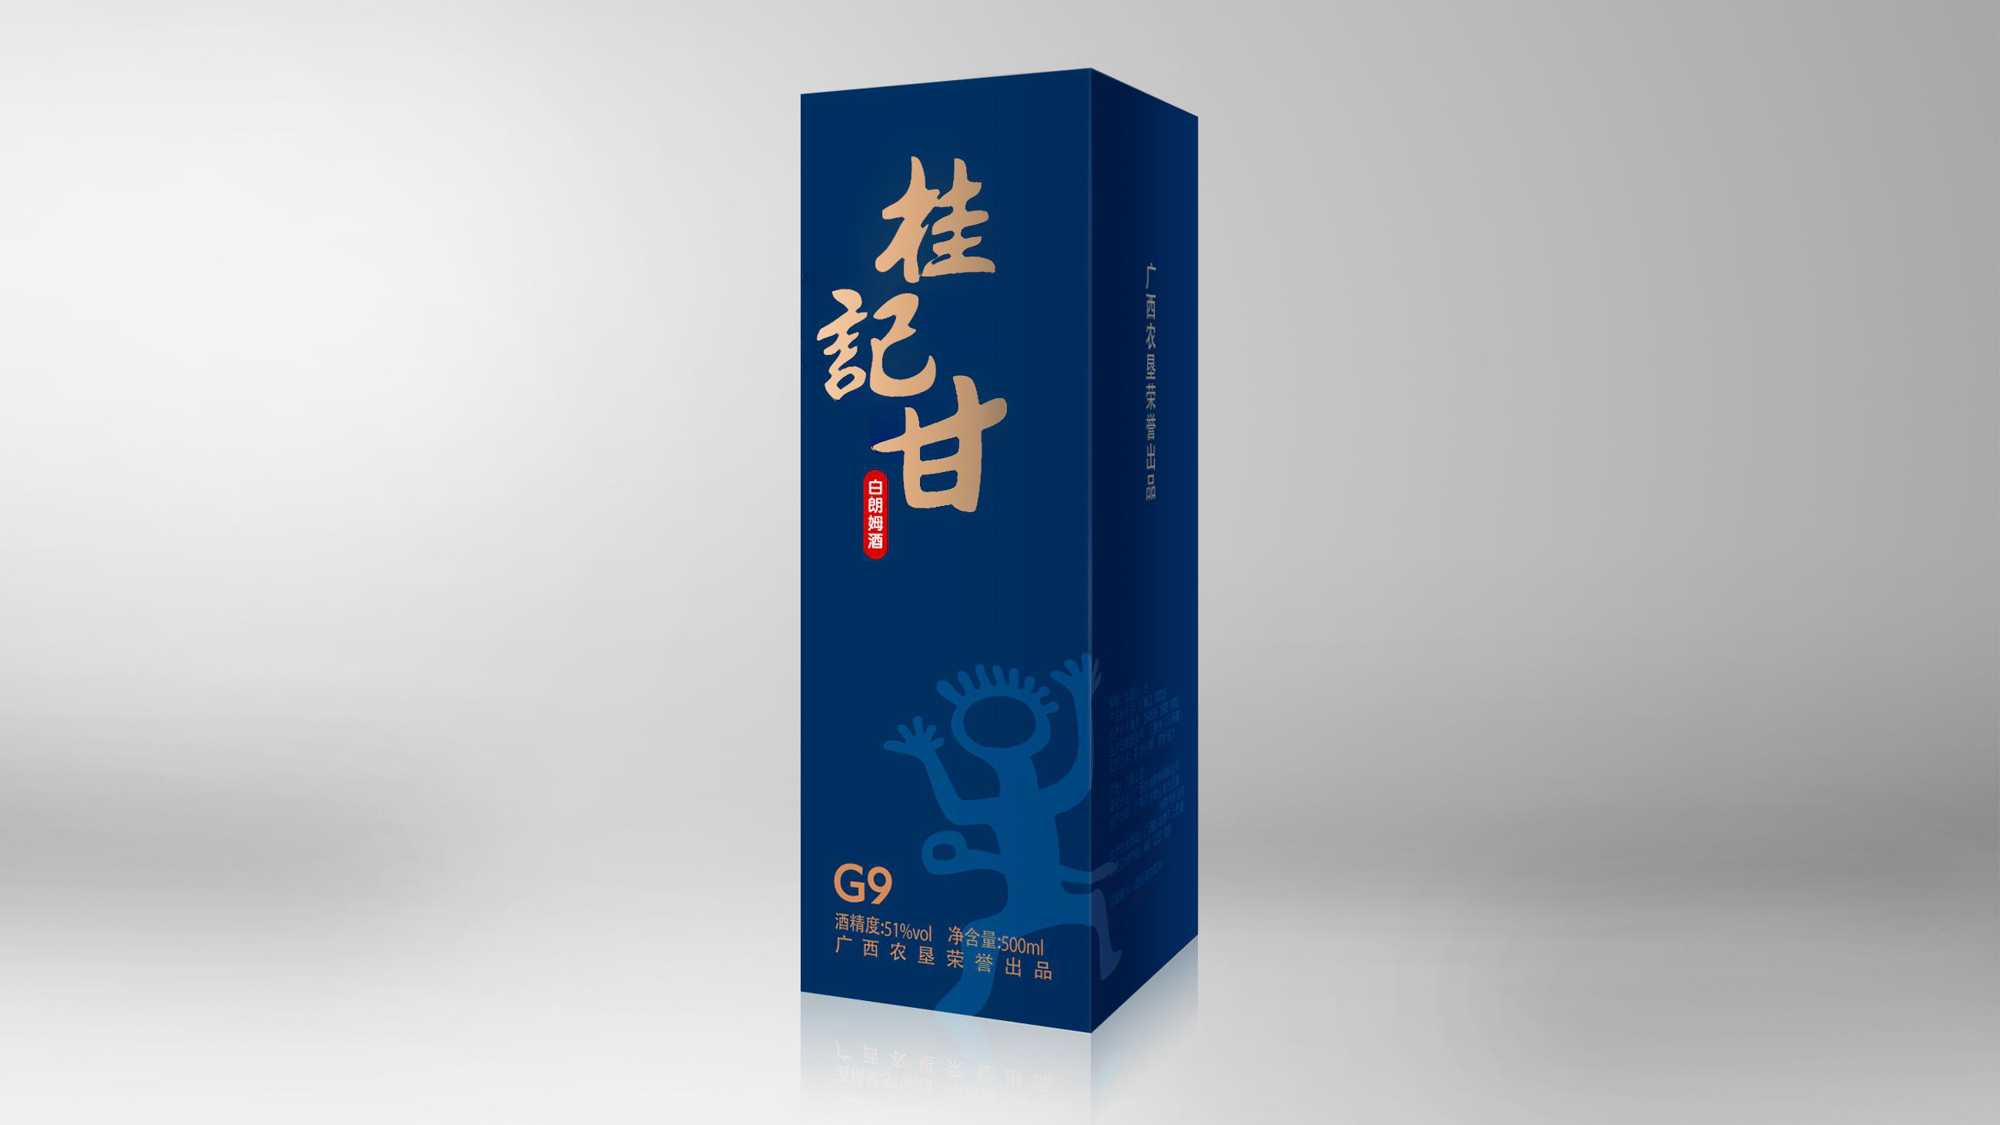 白朗姆酒 桂记甘-G9